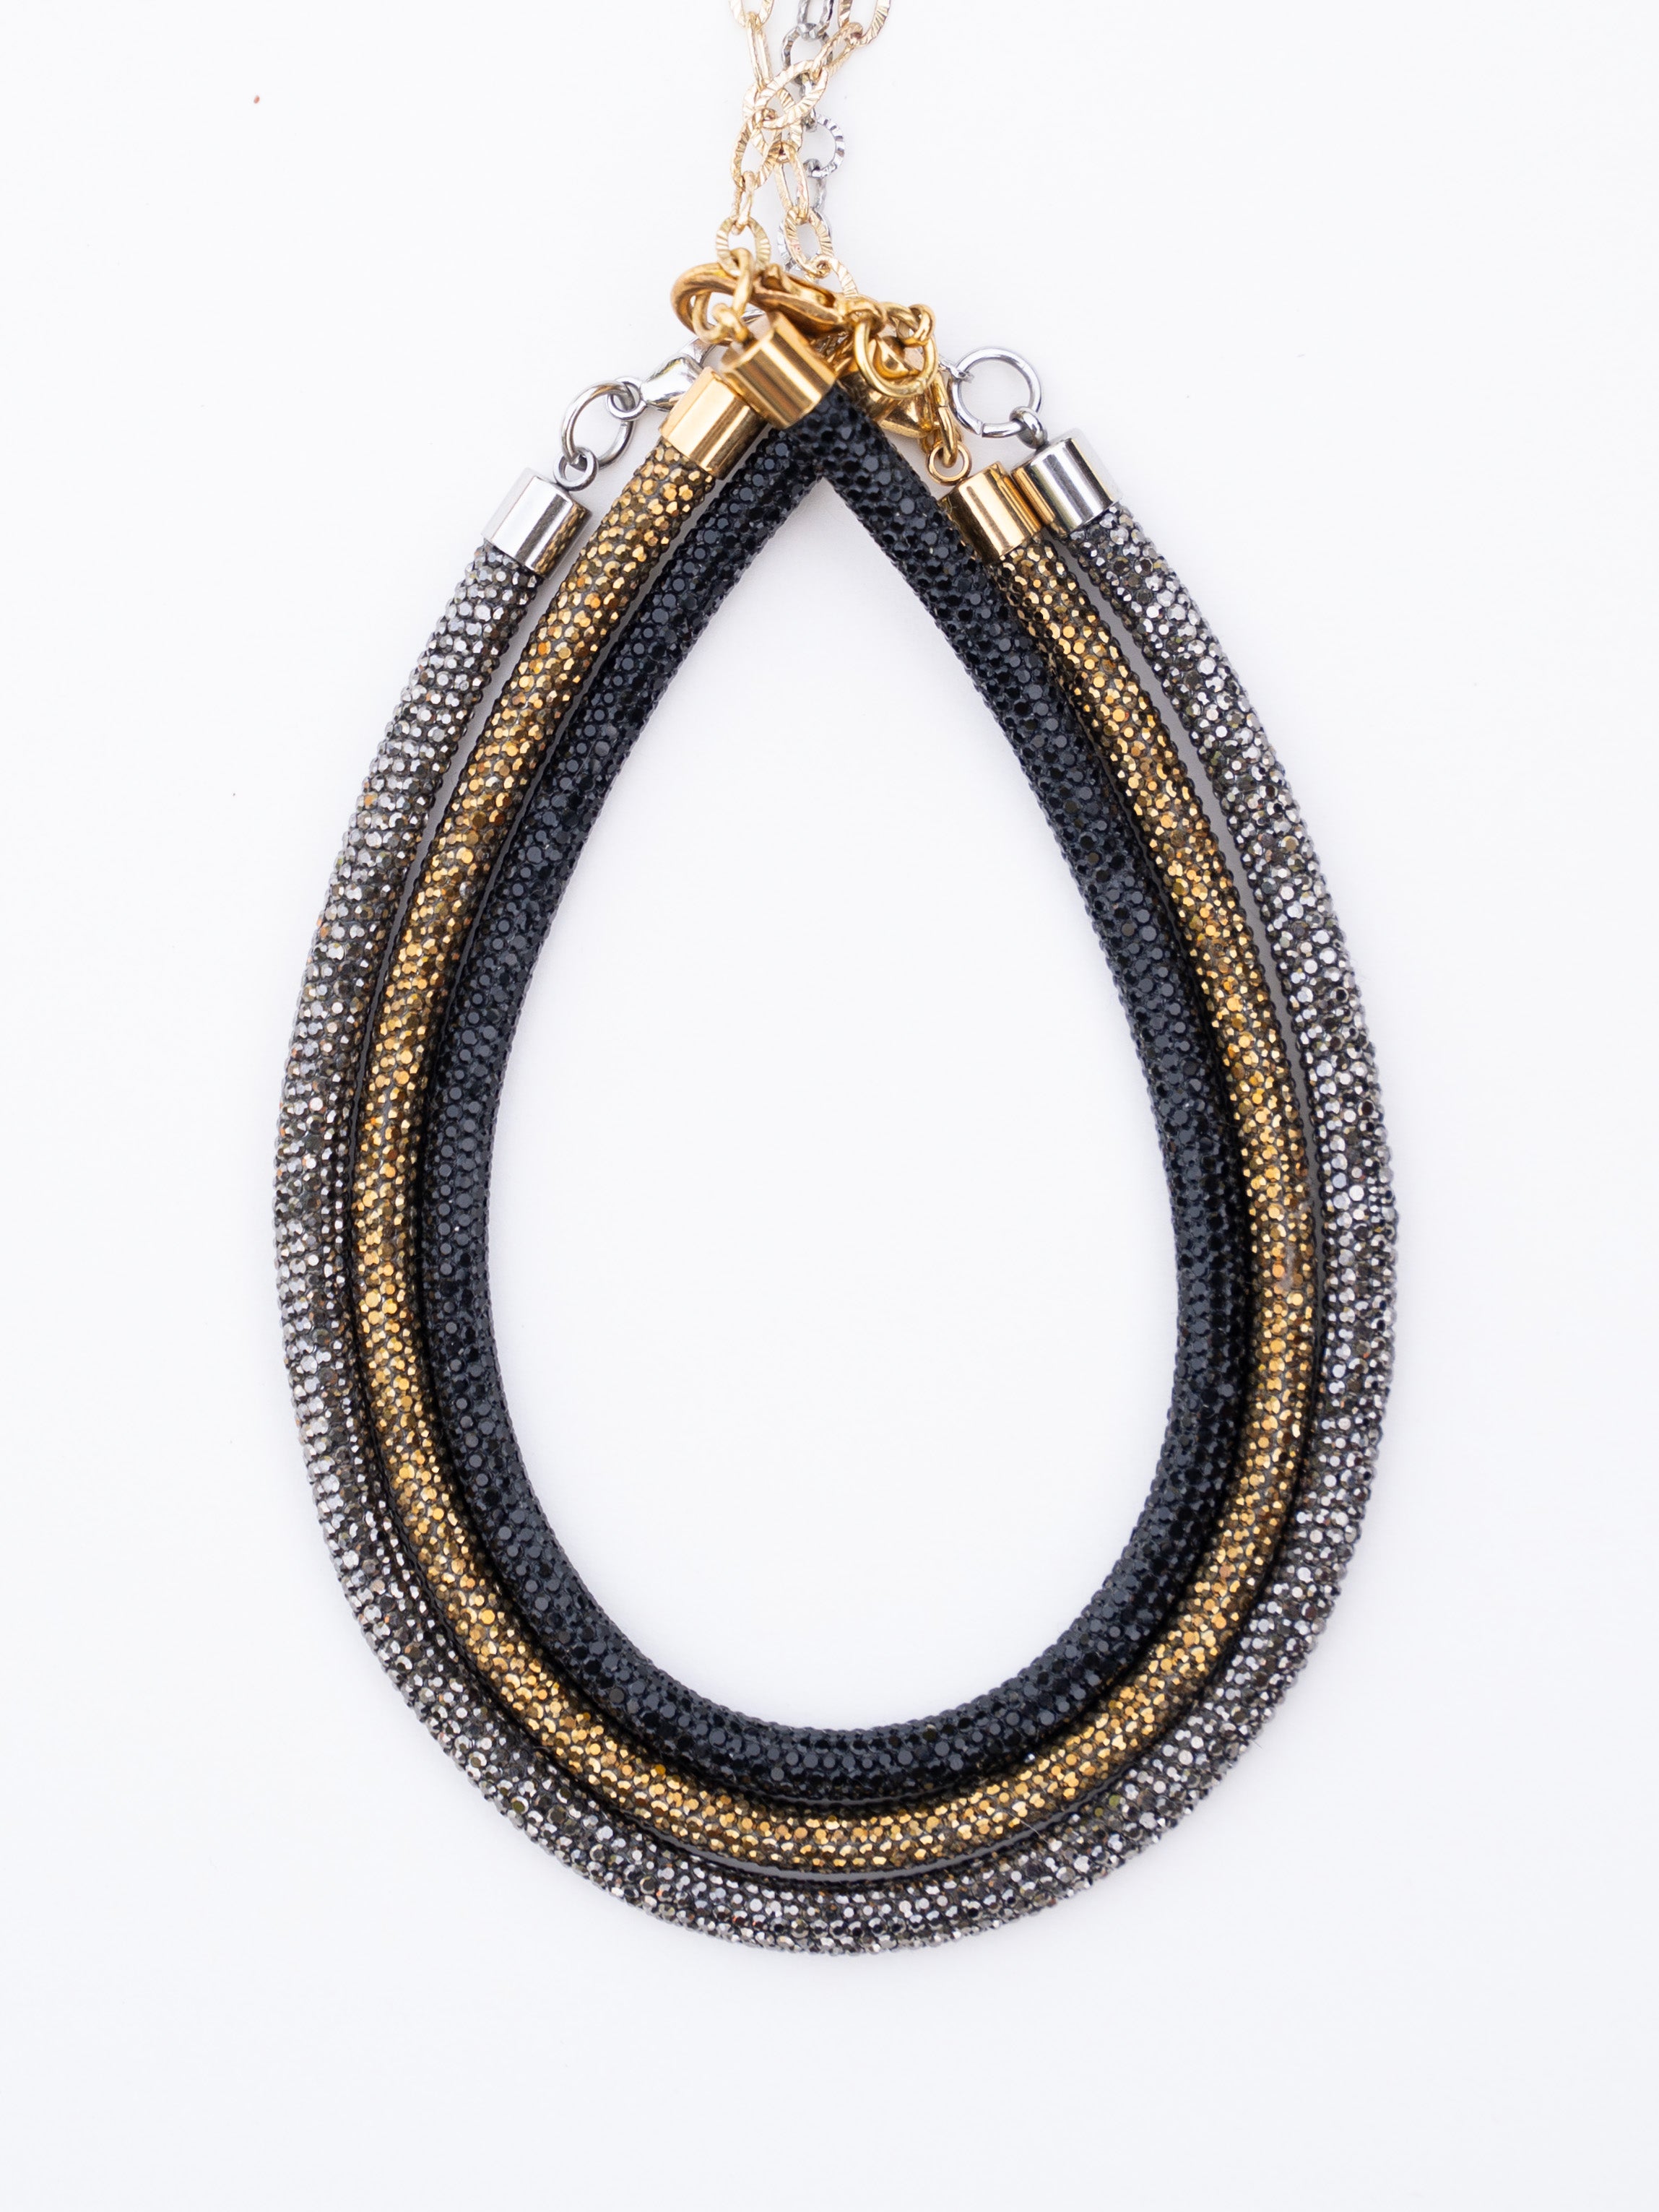 Rhinestone Rope Necklace - 3x Bundle